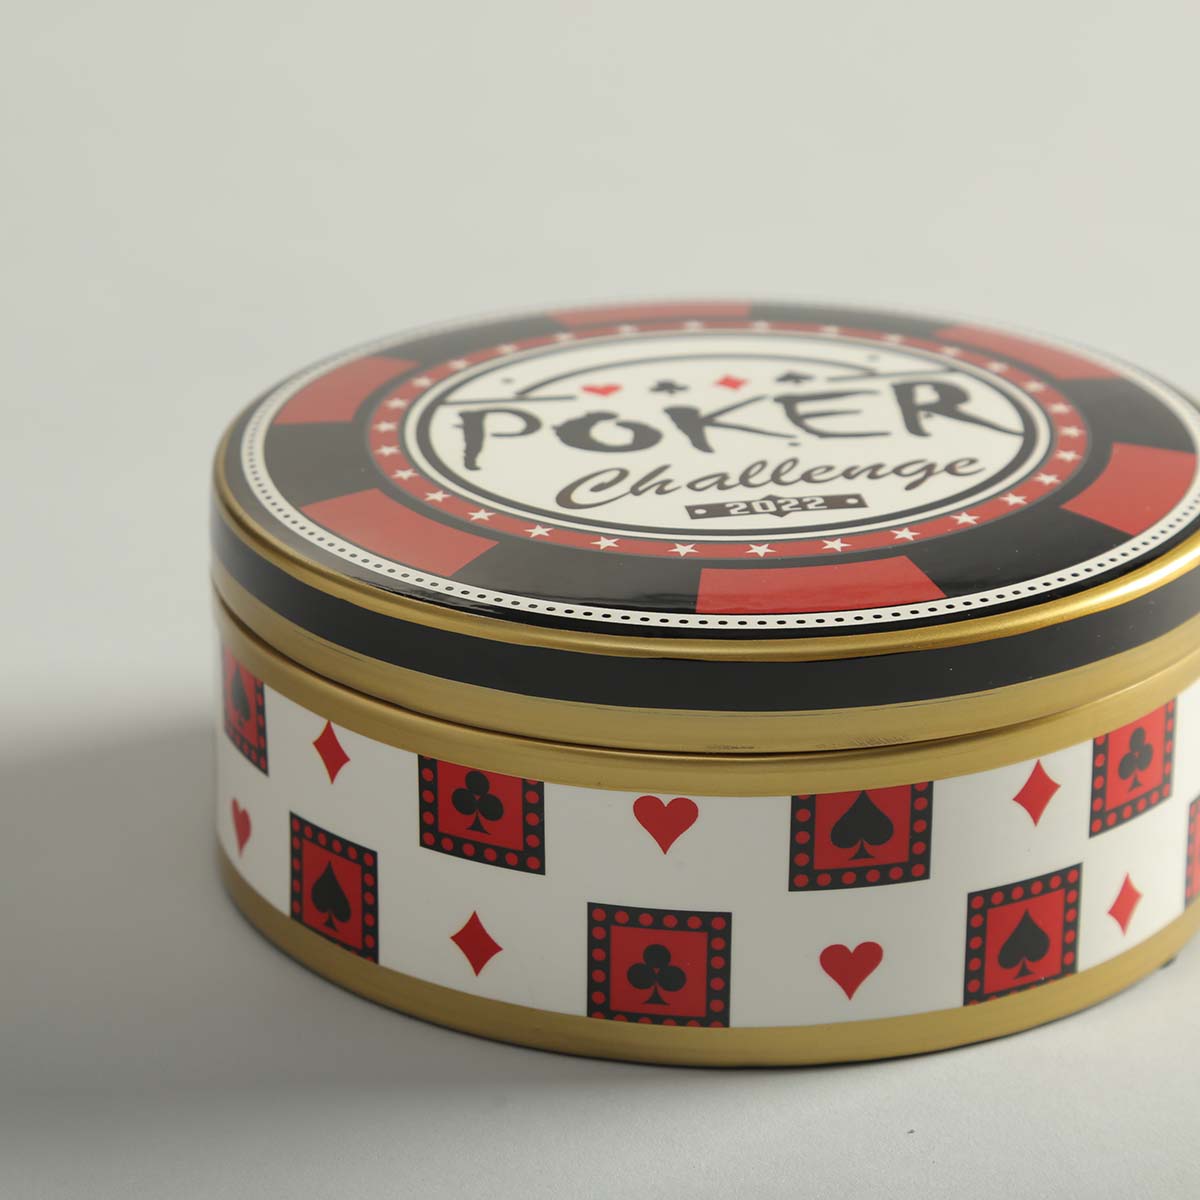 Poker Porcelain Storage Box